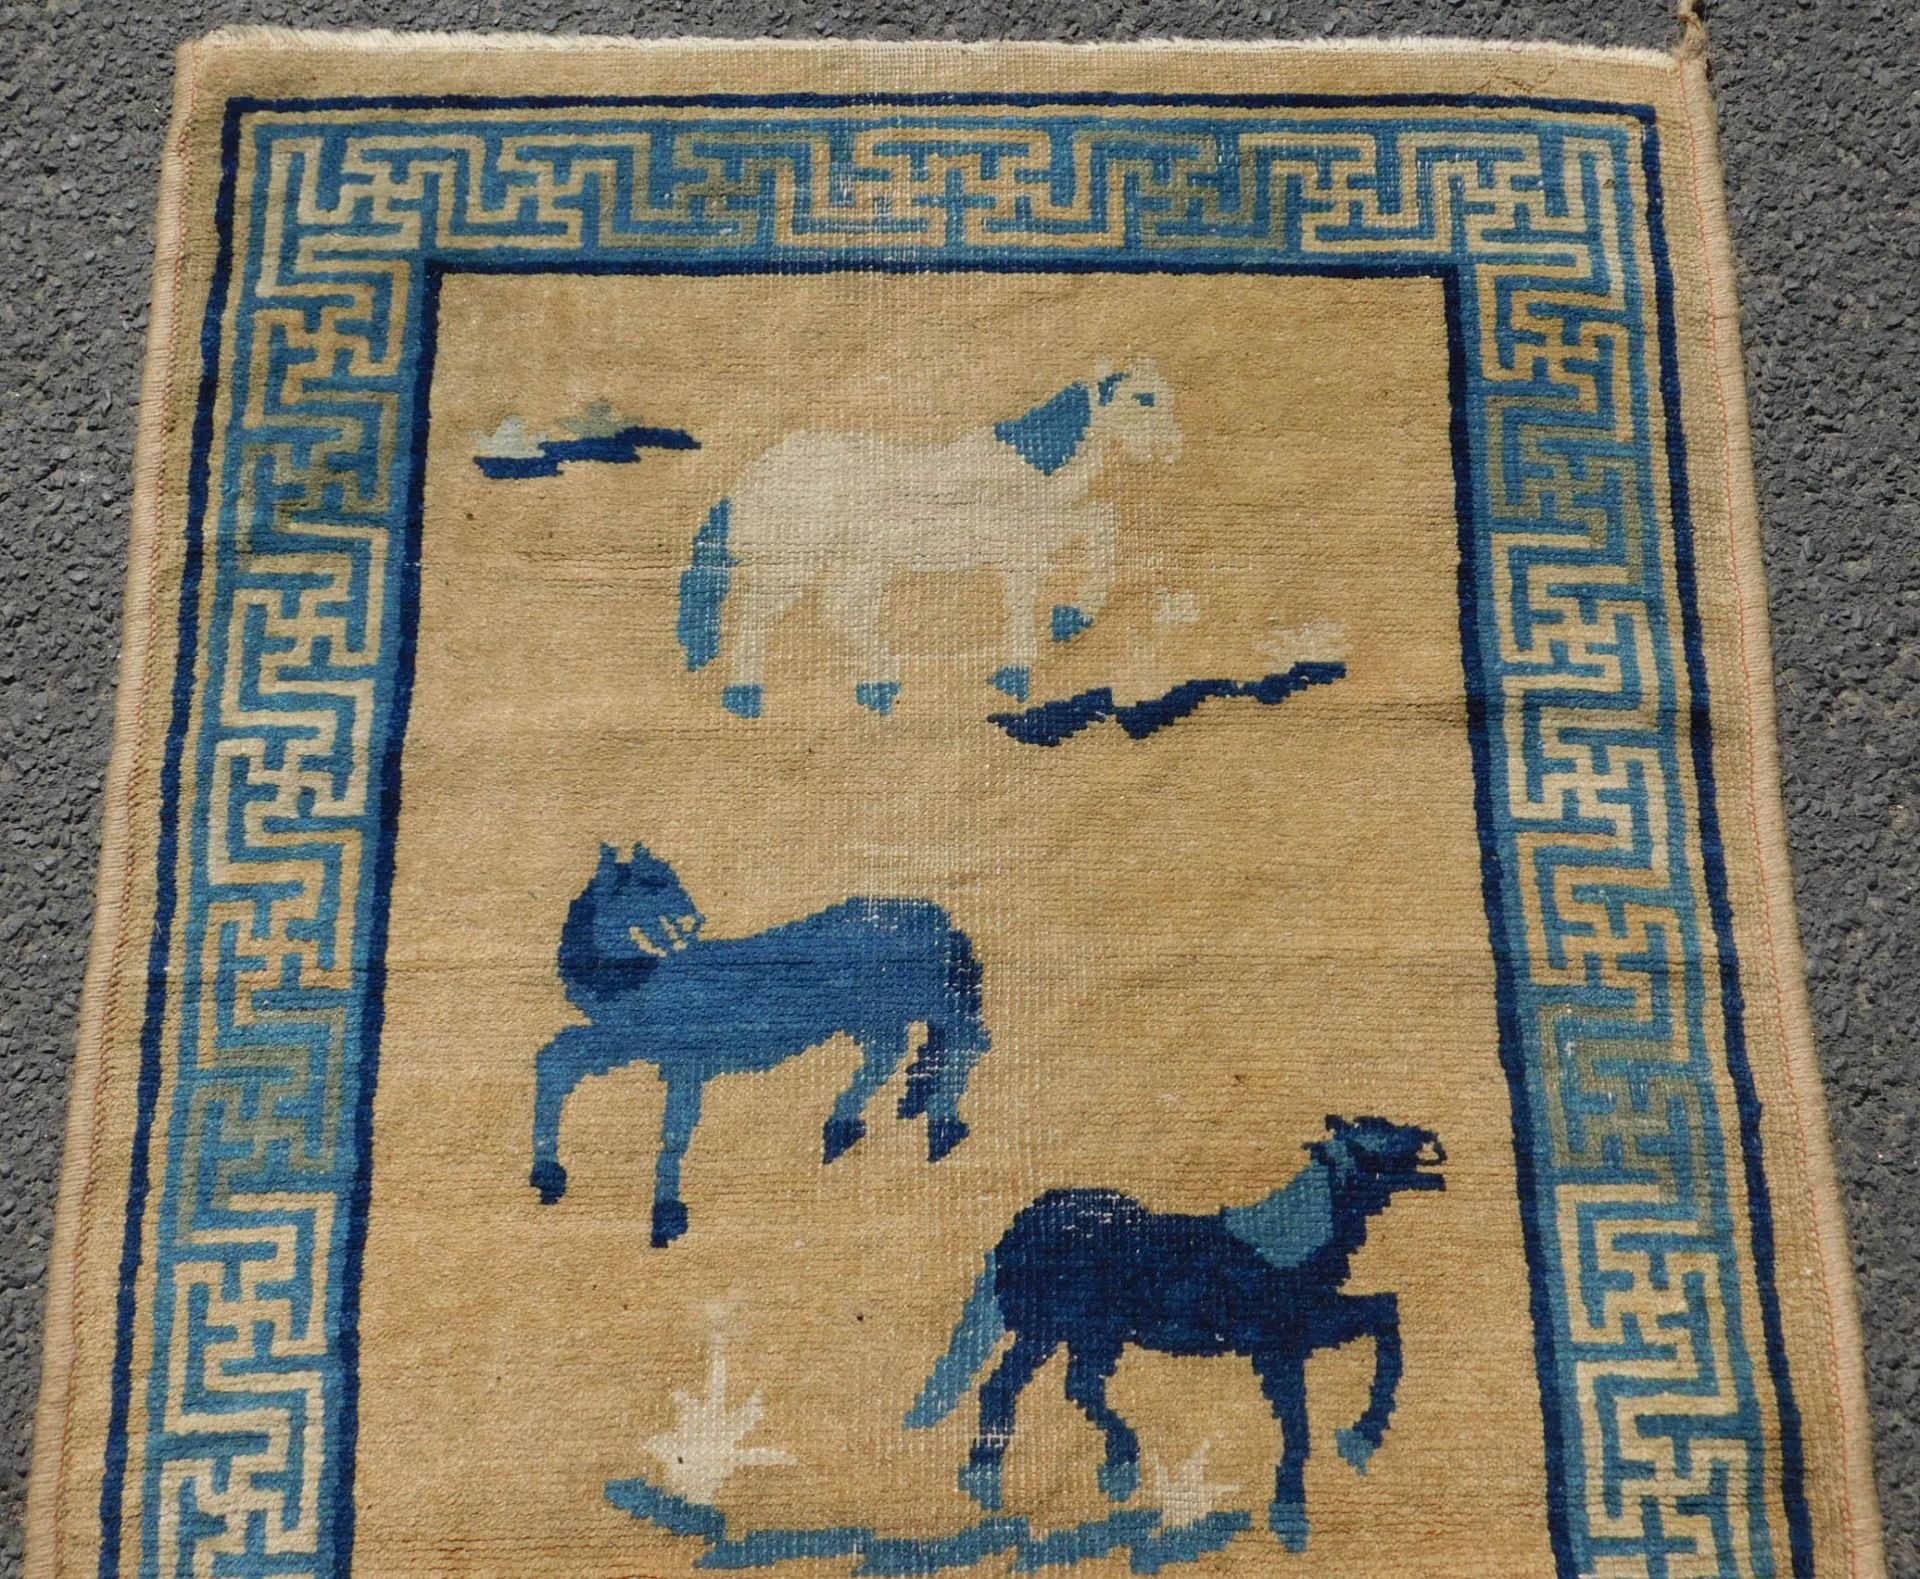 Baotou, Paotou. Teppich mit 6 Pferden. China / Mongolei antik. - Bild 3 aus 4